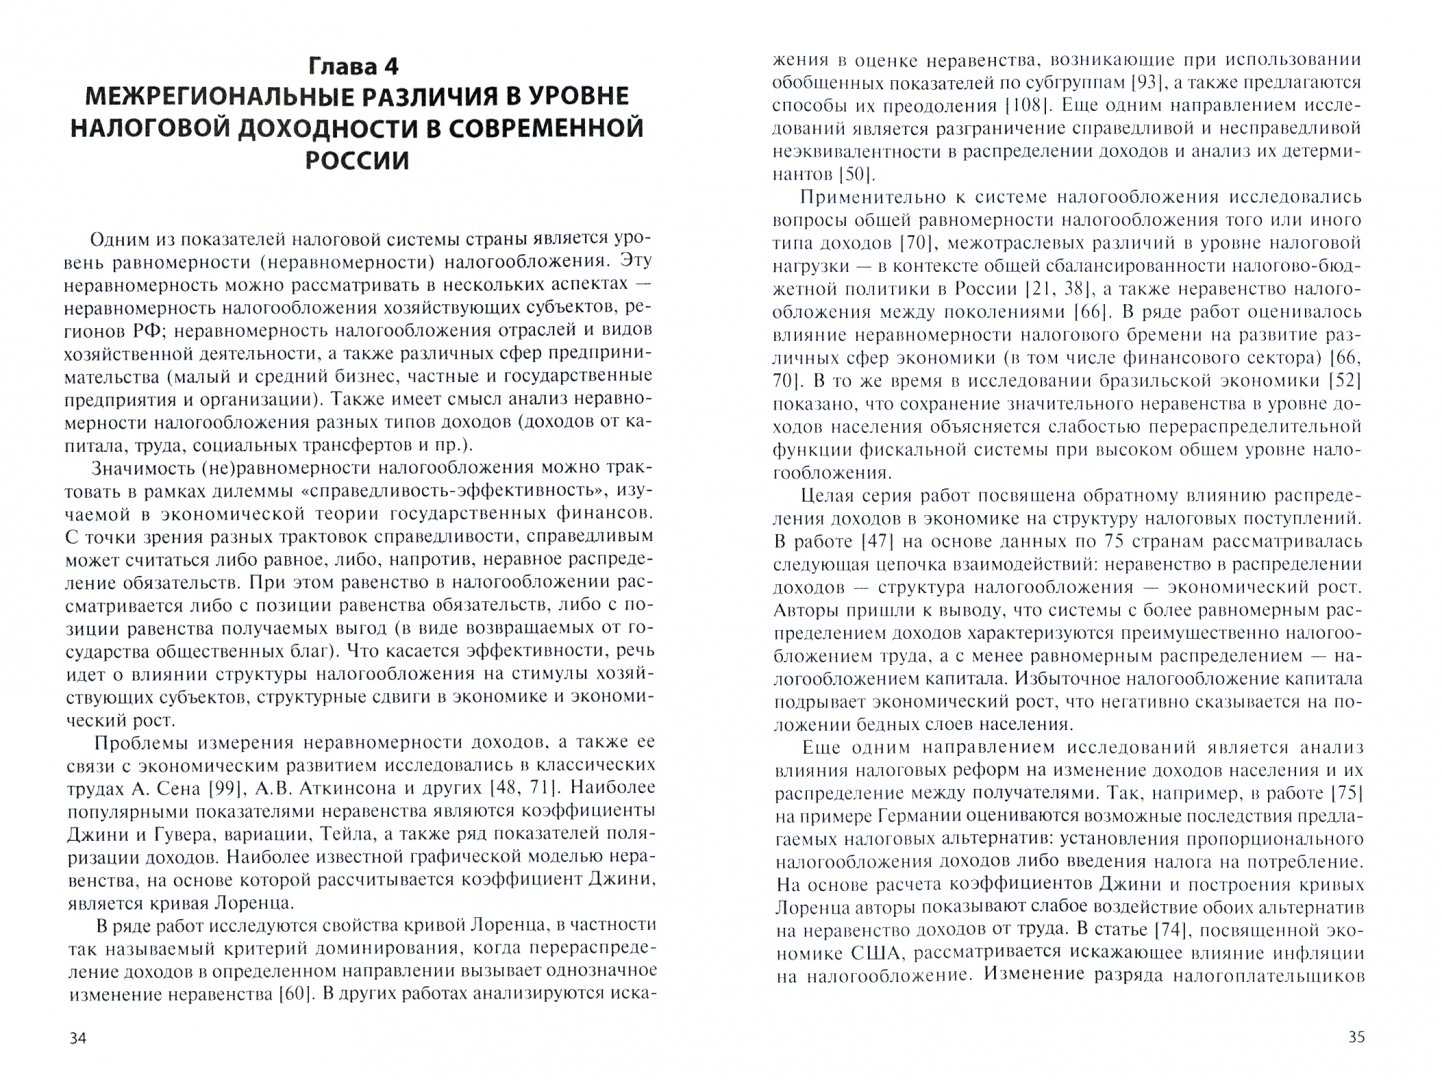 Иллюстрация 1 из 6 для Налоговая система РФ и ее характеристики - Малкина, Балакин | Лабиринт - книги. Источник: Лабиринт